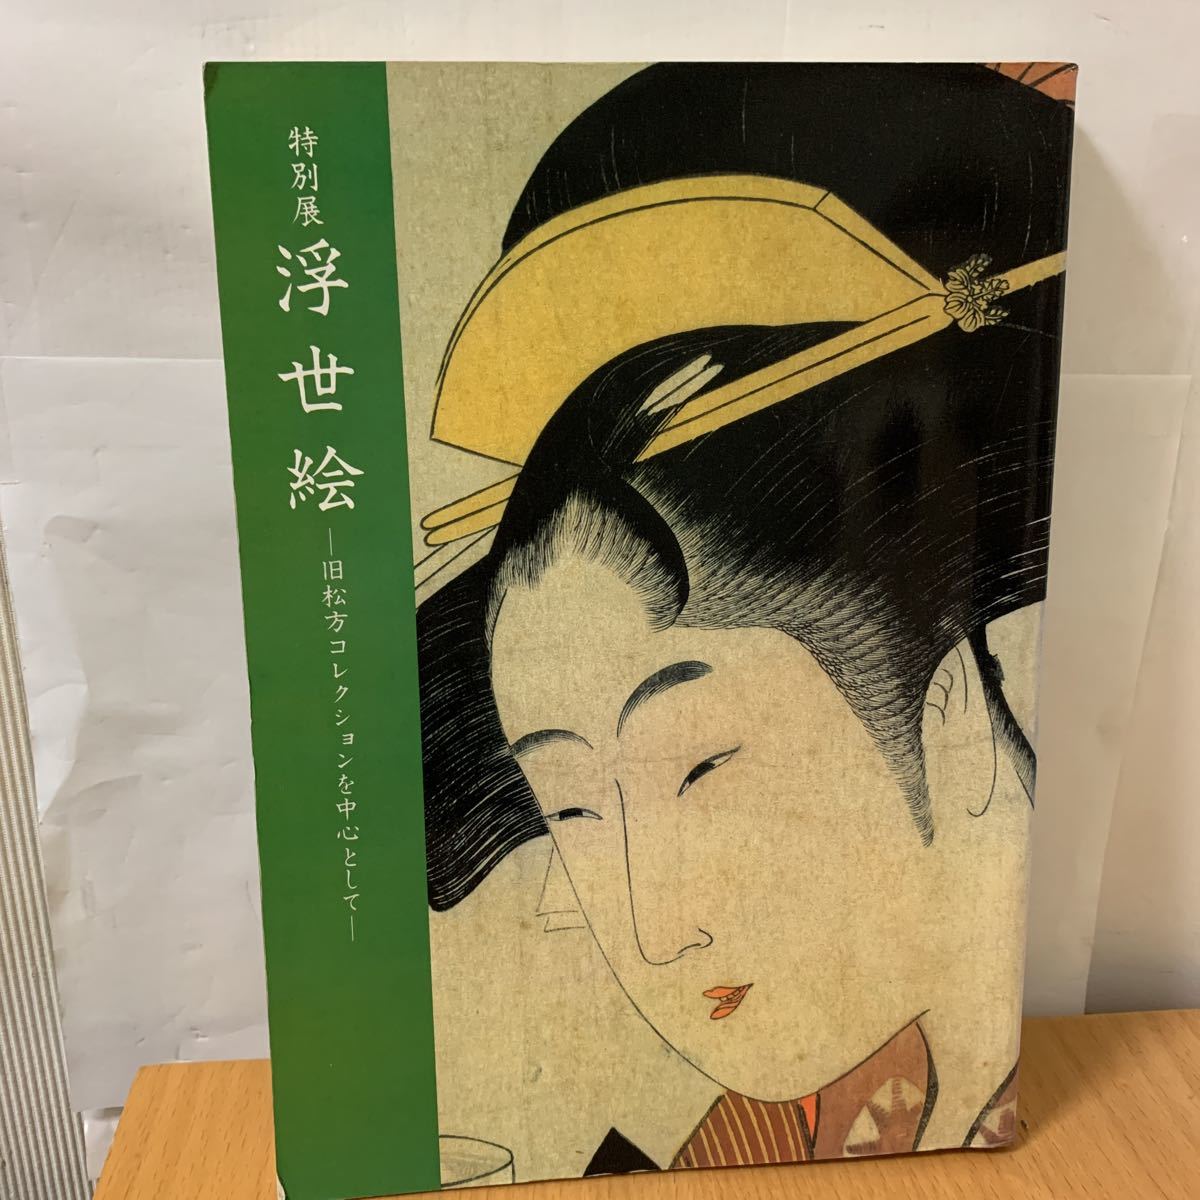 Специальная выставка: Укиё-э из бывшей коллекции Мацуката, Рисование, Книга по искусству, Коллекция, Каталог